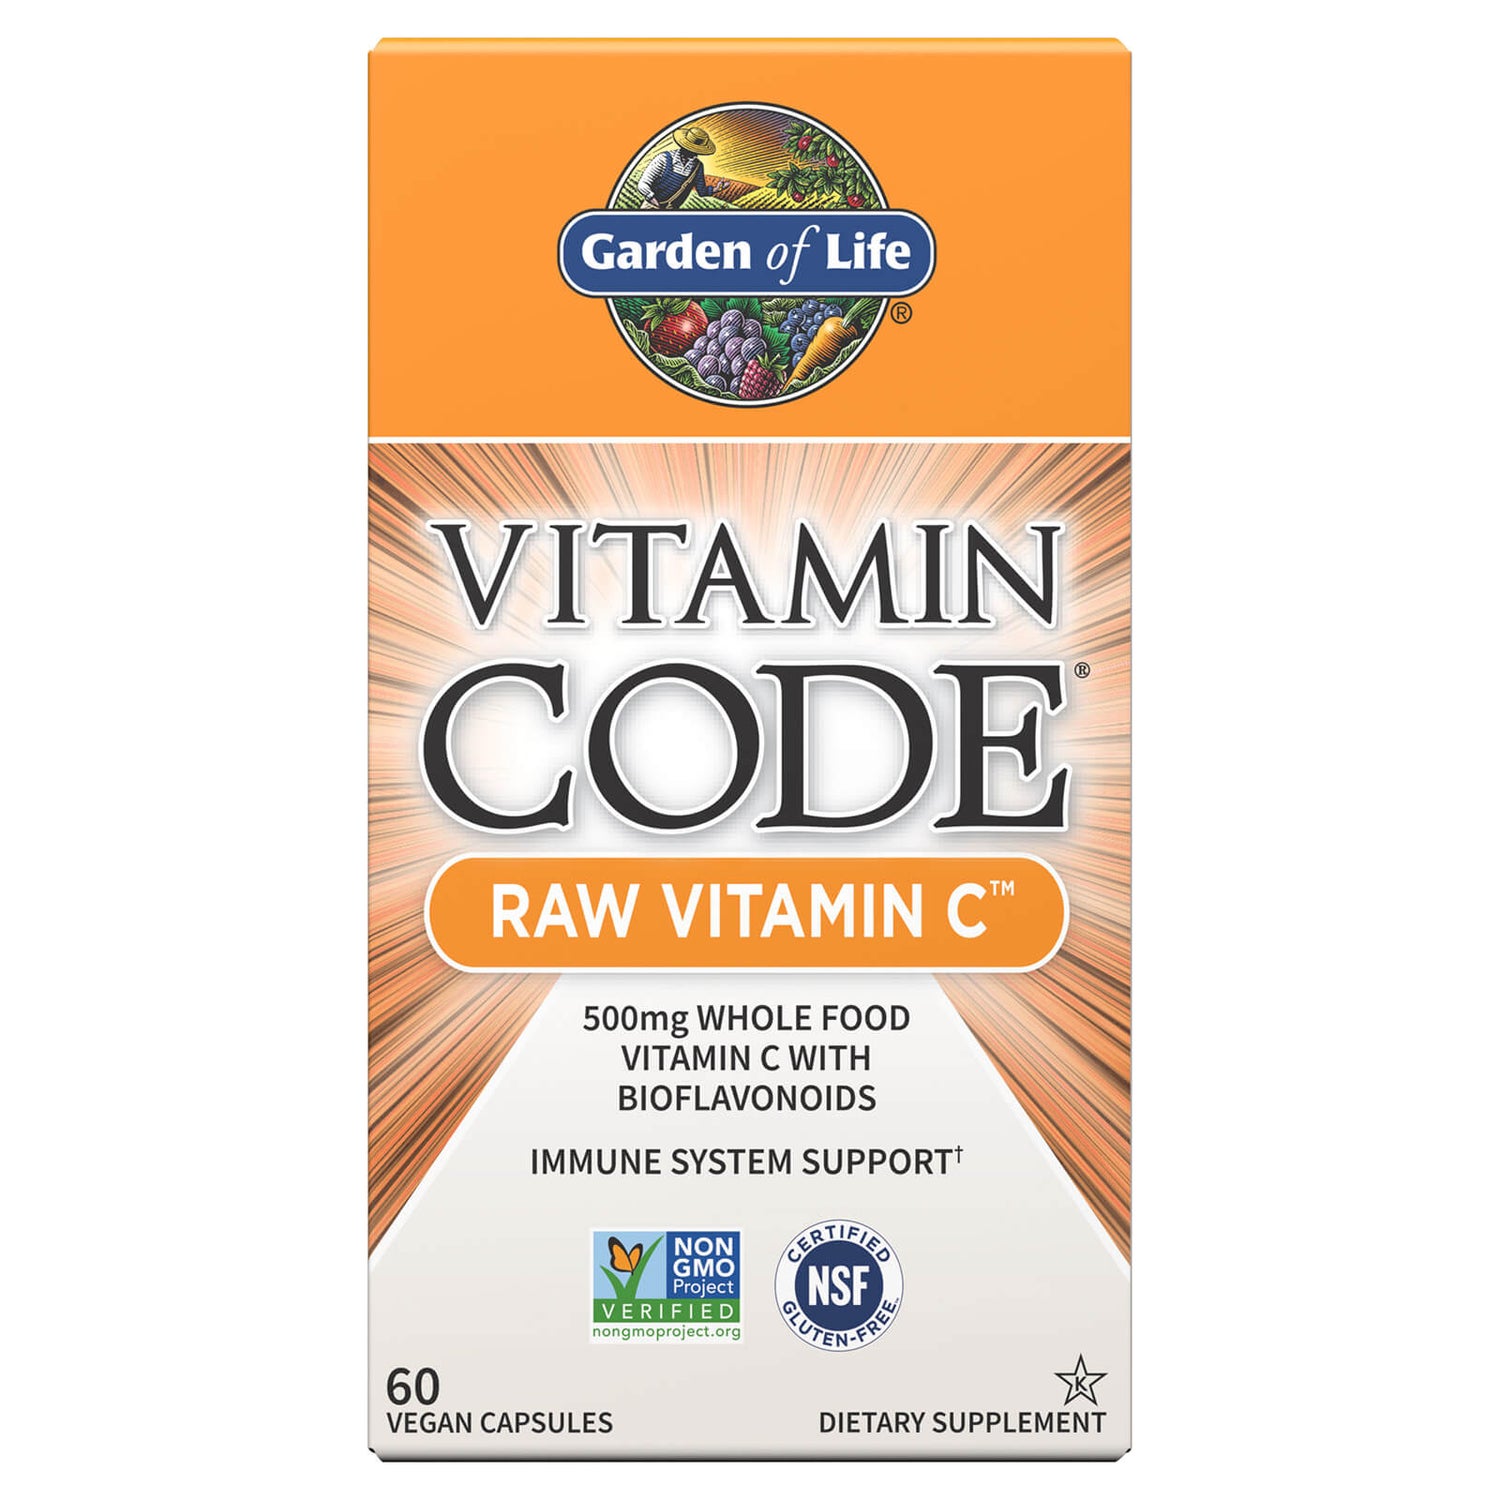 Vitamin Code Raw Vitamine C - 60 capsules